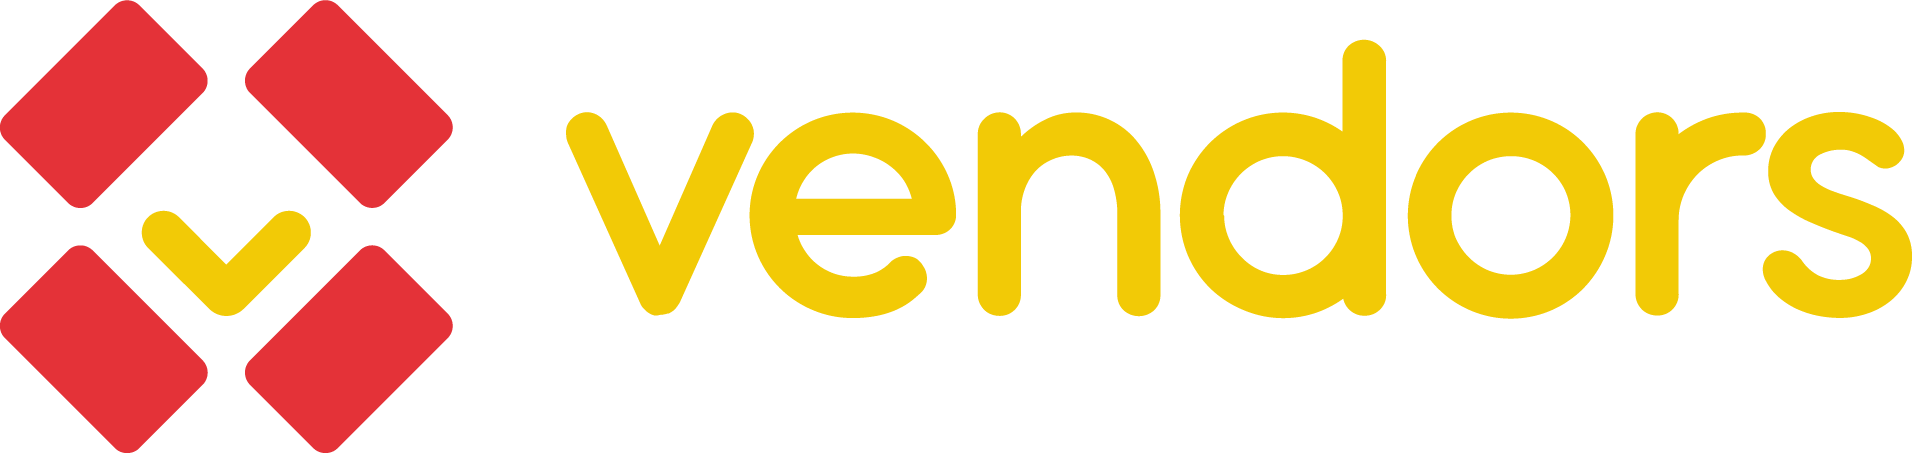 vendors-logo